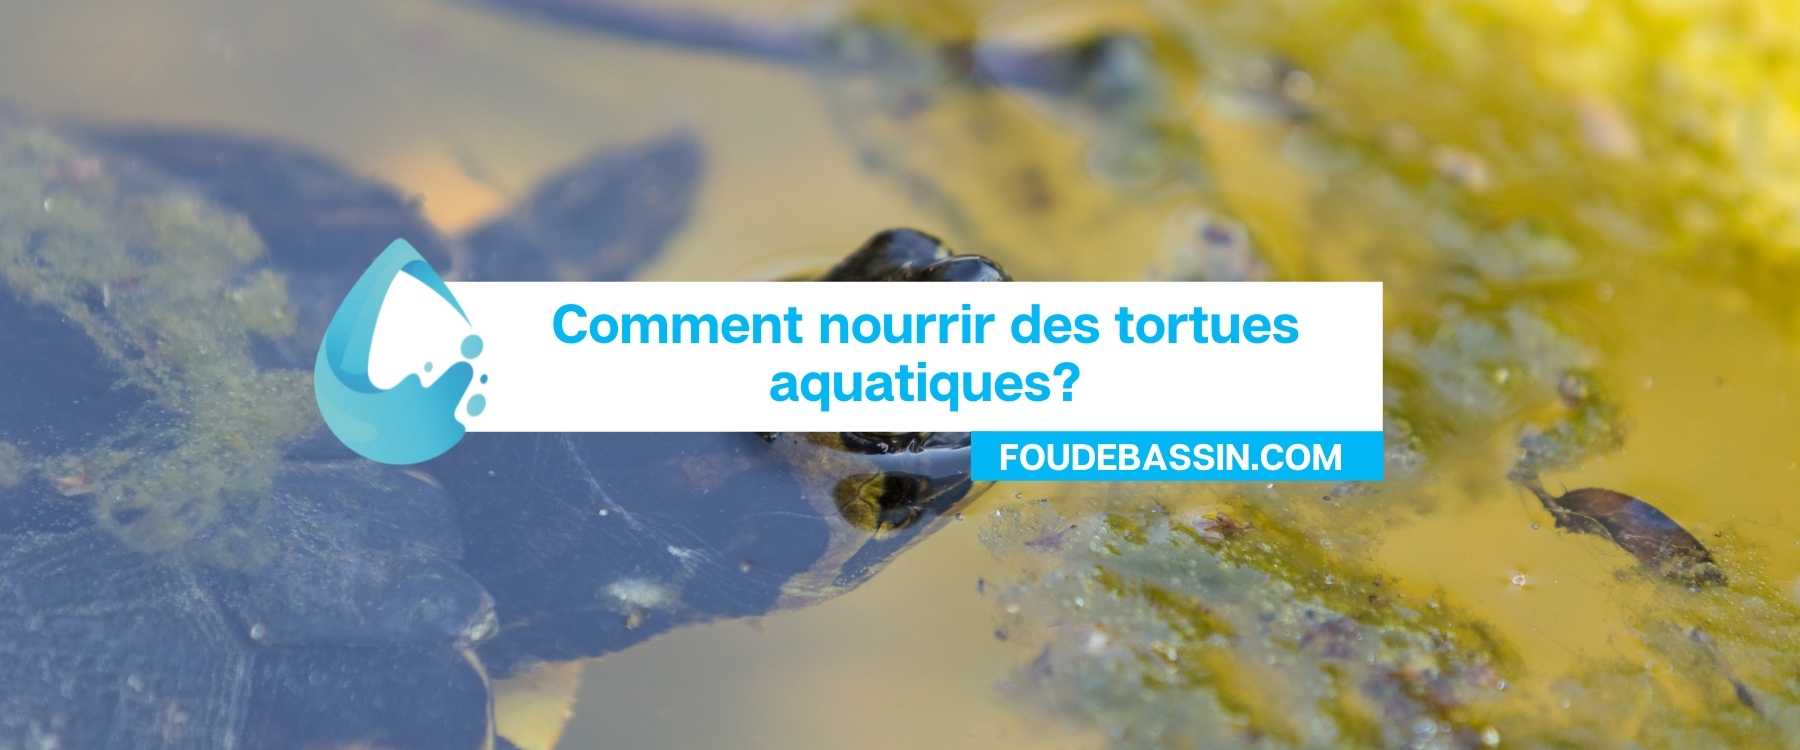 Comment nourrir des tortues aquatiques?